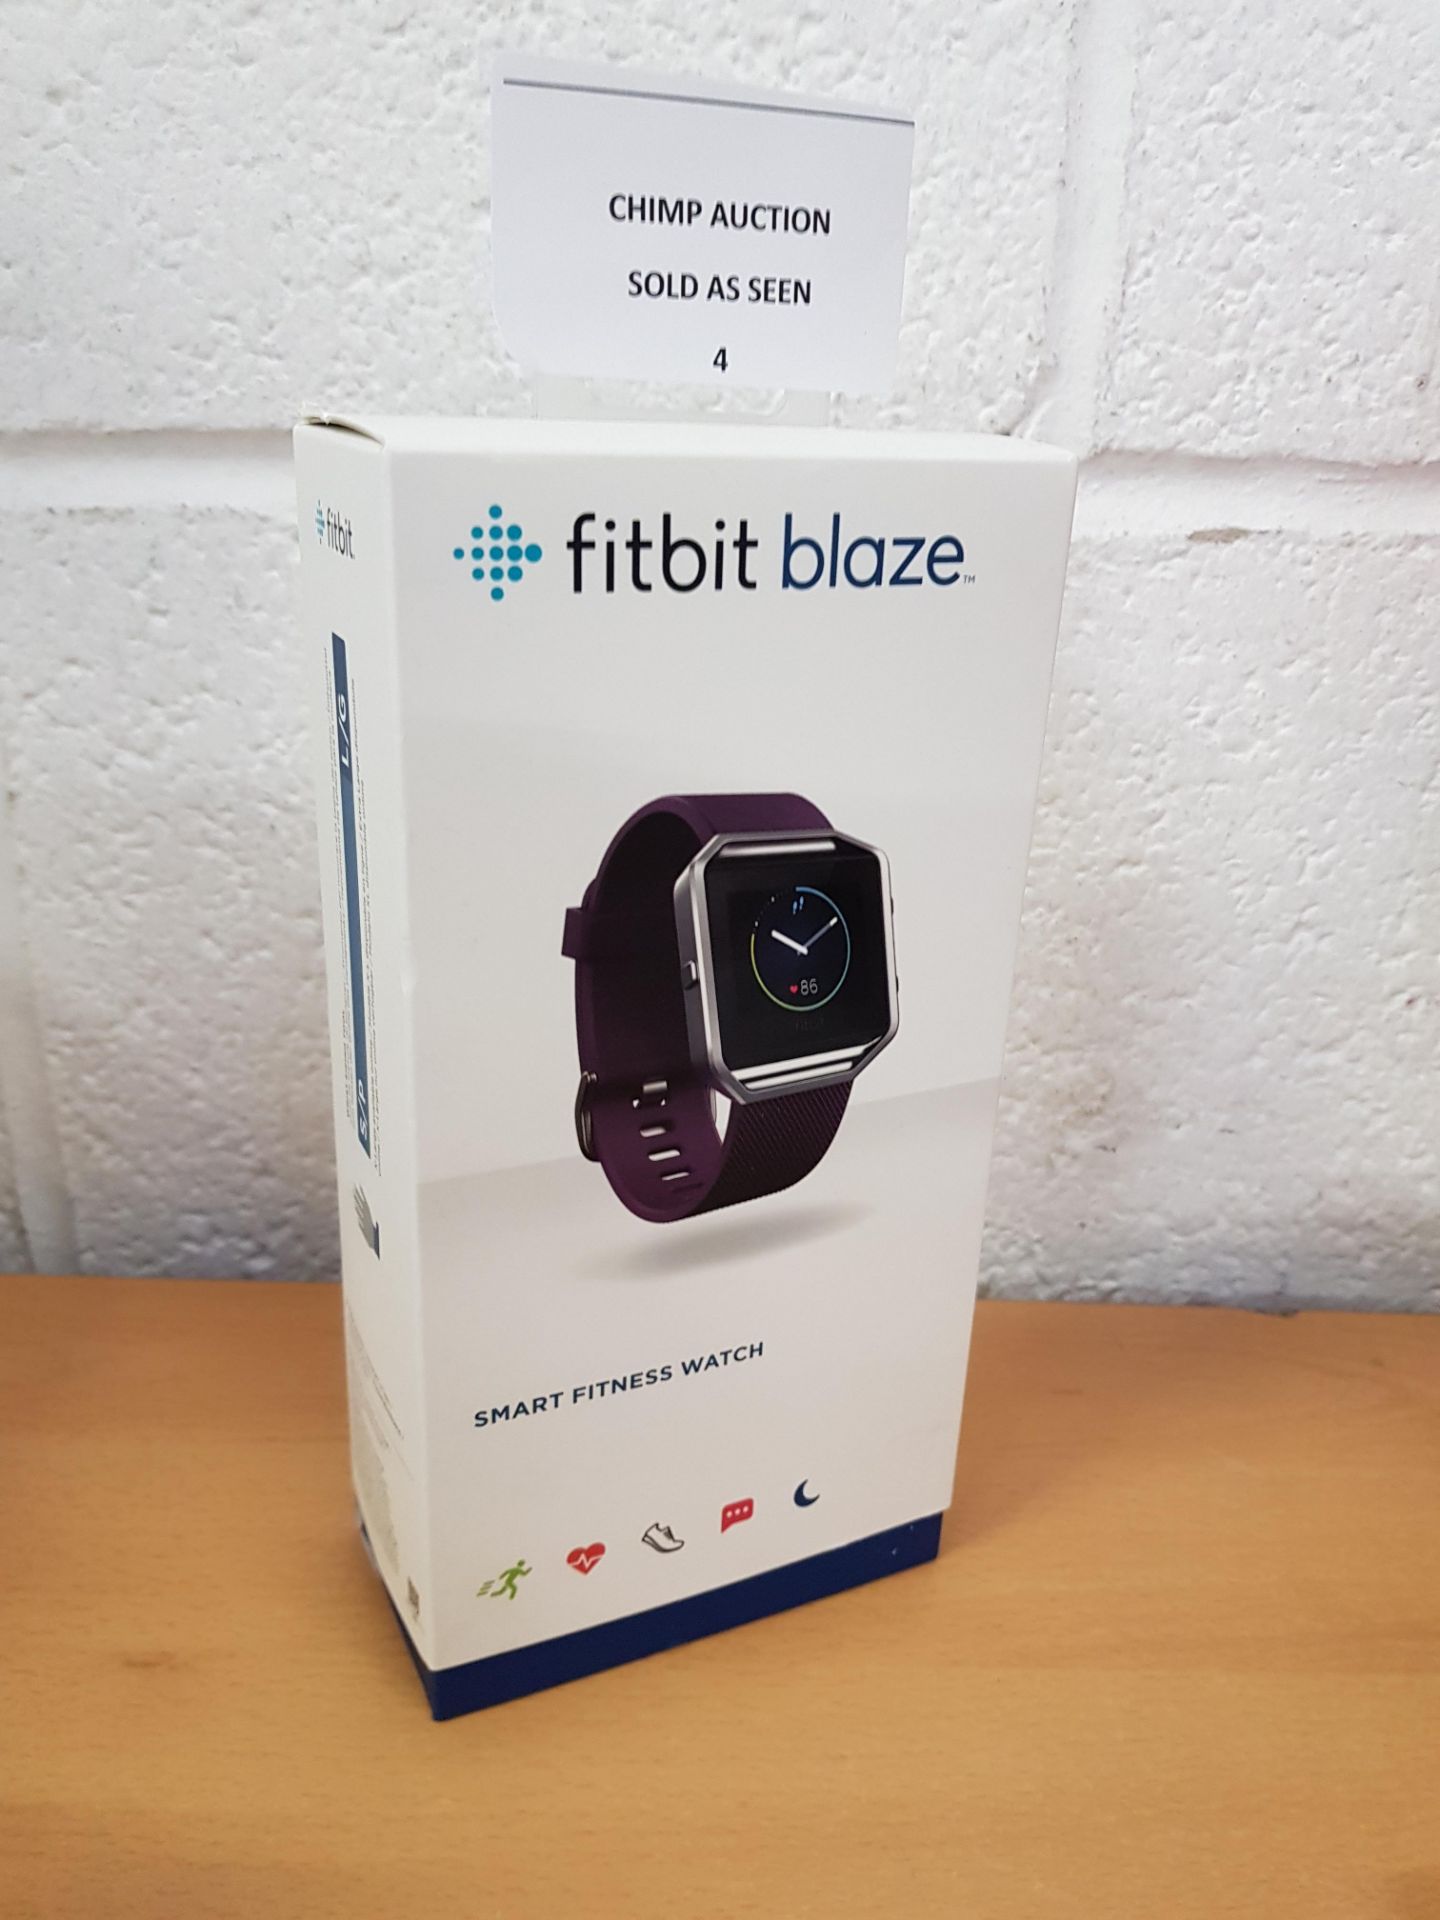 Fitbit Blaze Smart Fitness Watch RRP £159.99.